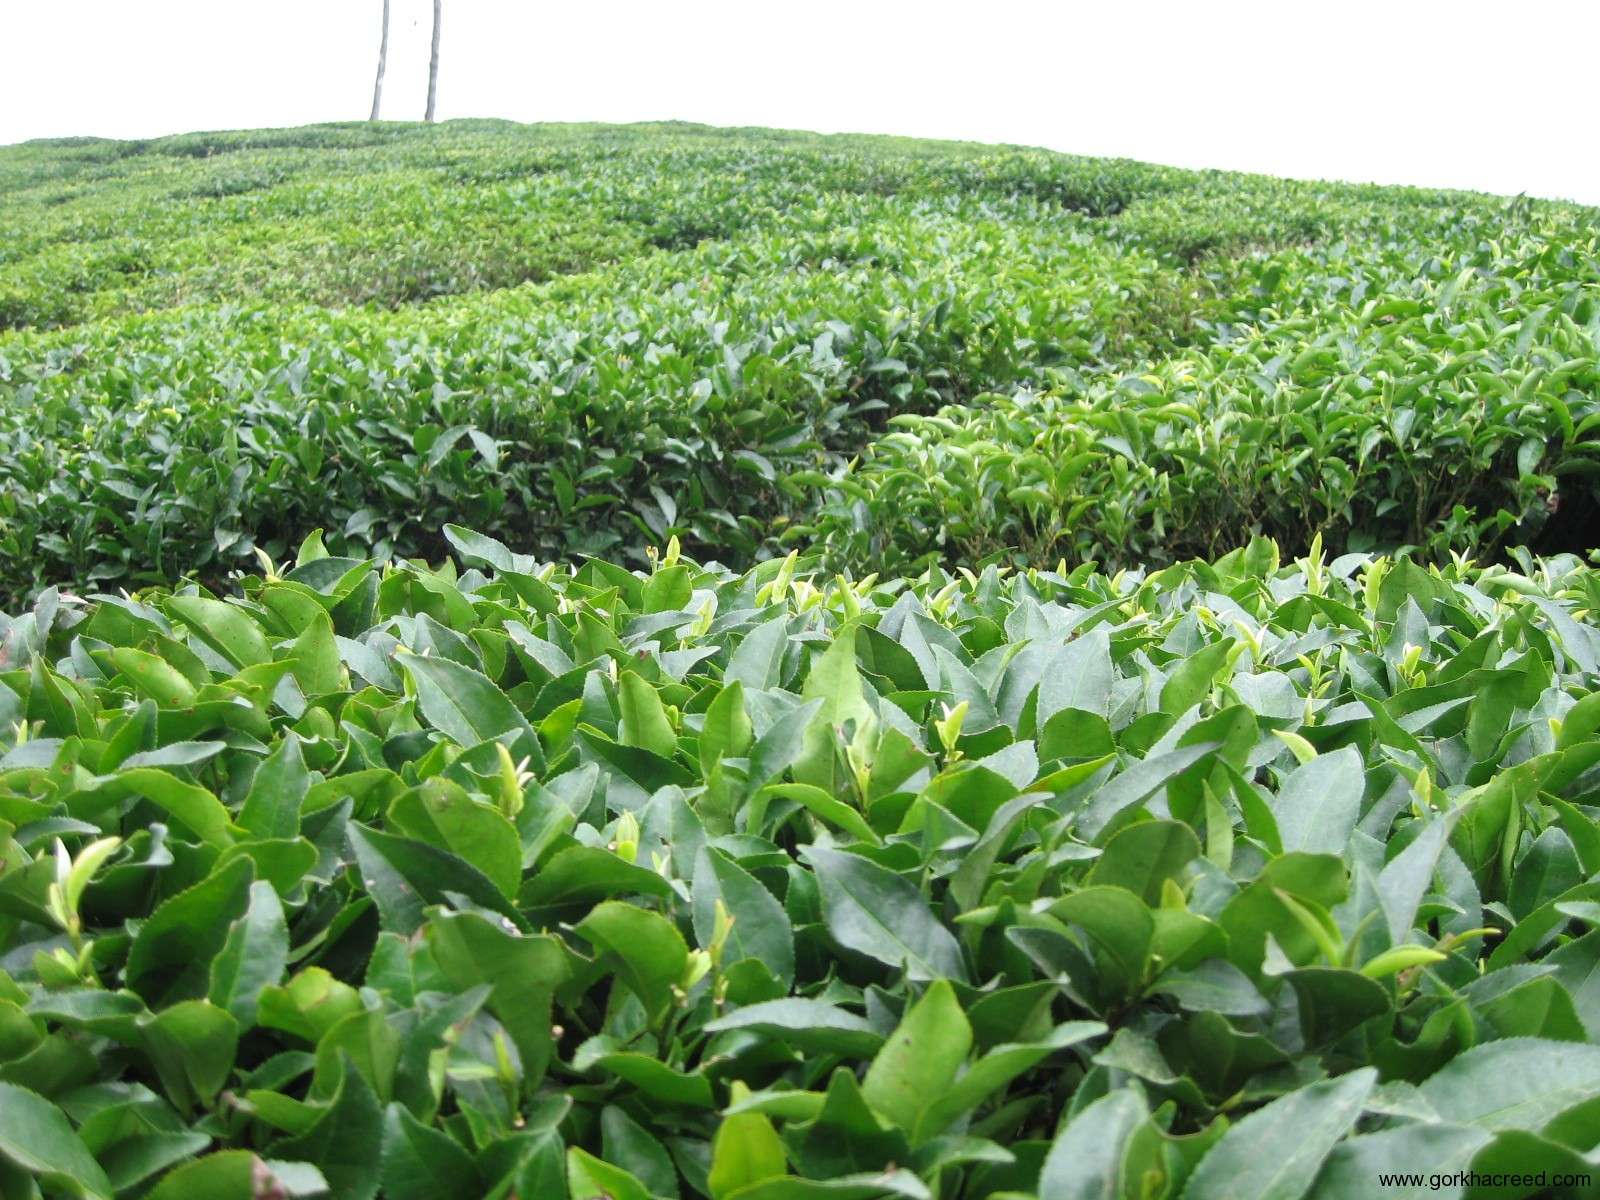 مسوول سازمان توسعه تجارت:صادرات چای داخلی آزاد است